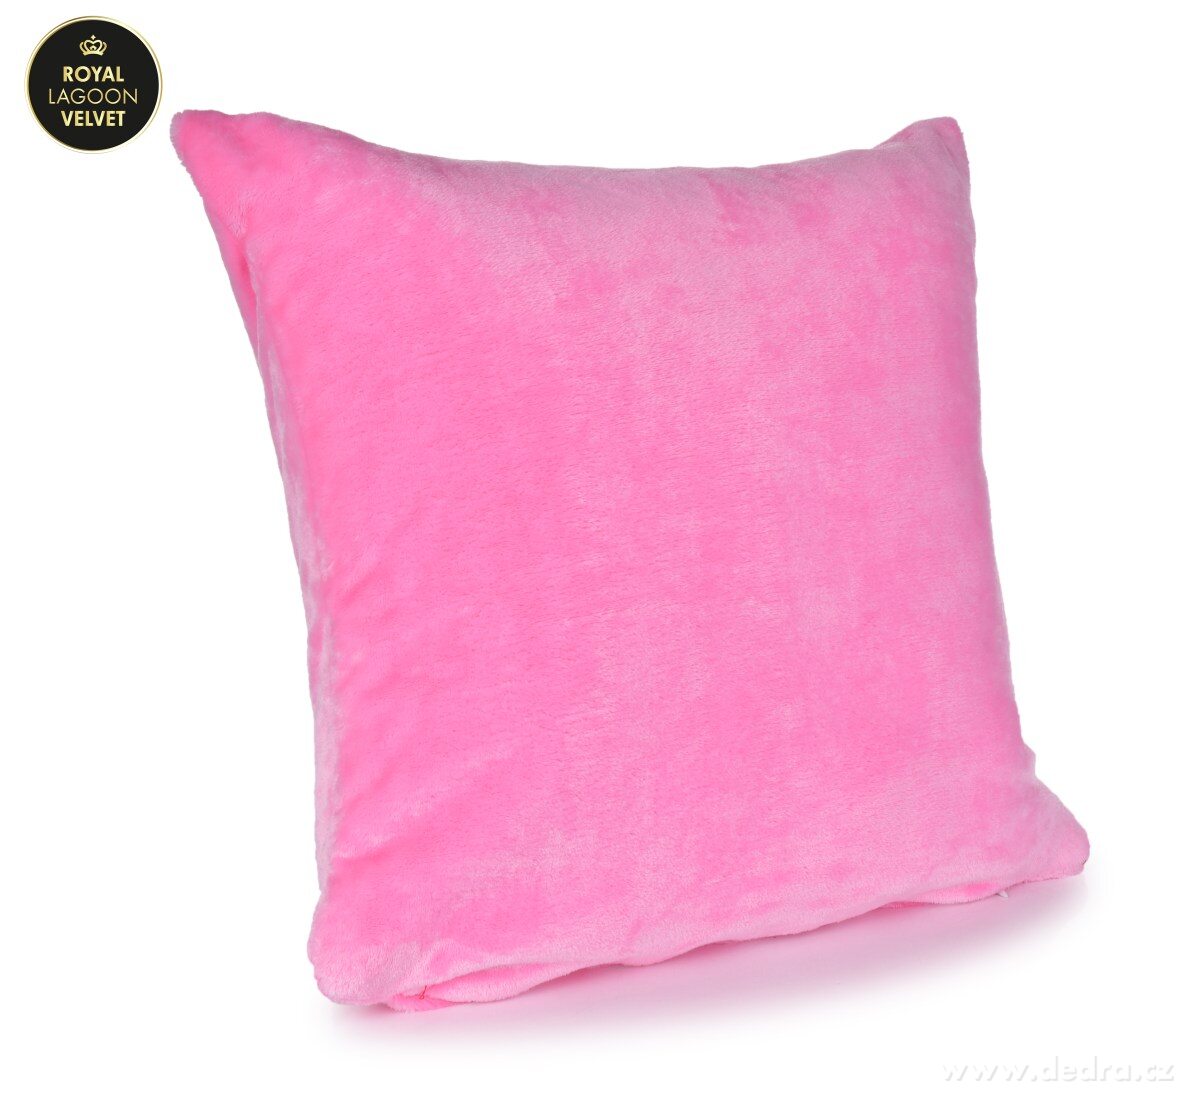 ROYAL LAGOON VELVET párnahuzat 45x45 cm- világos rózsaszín